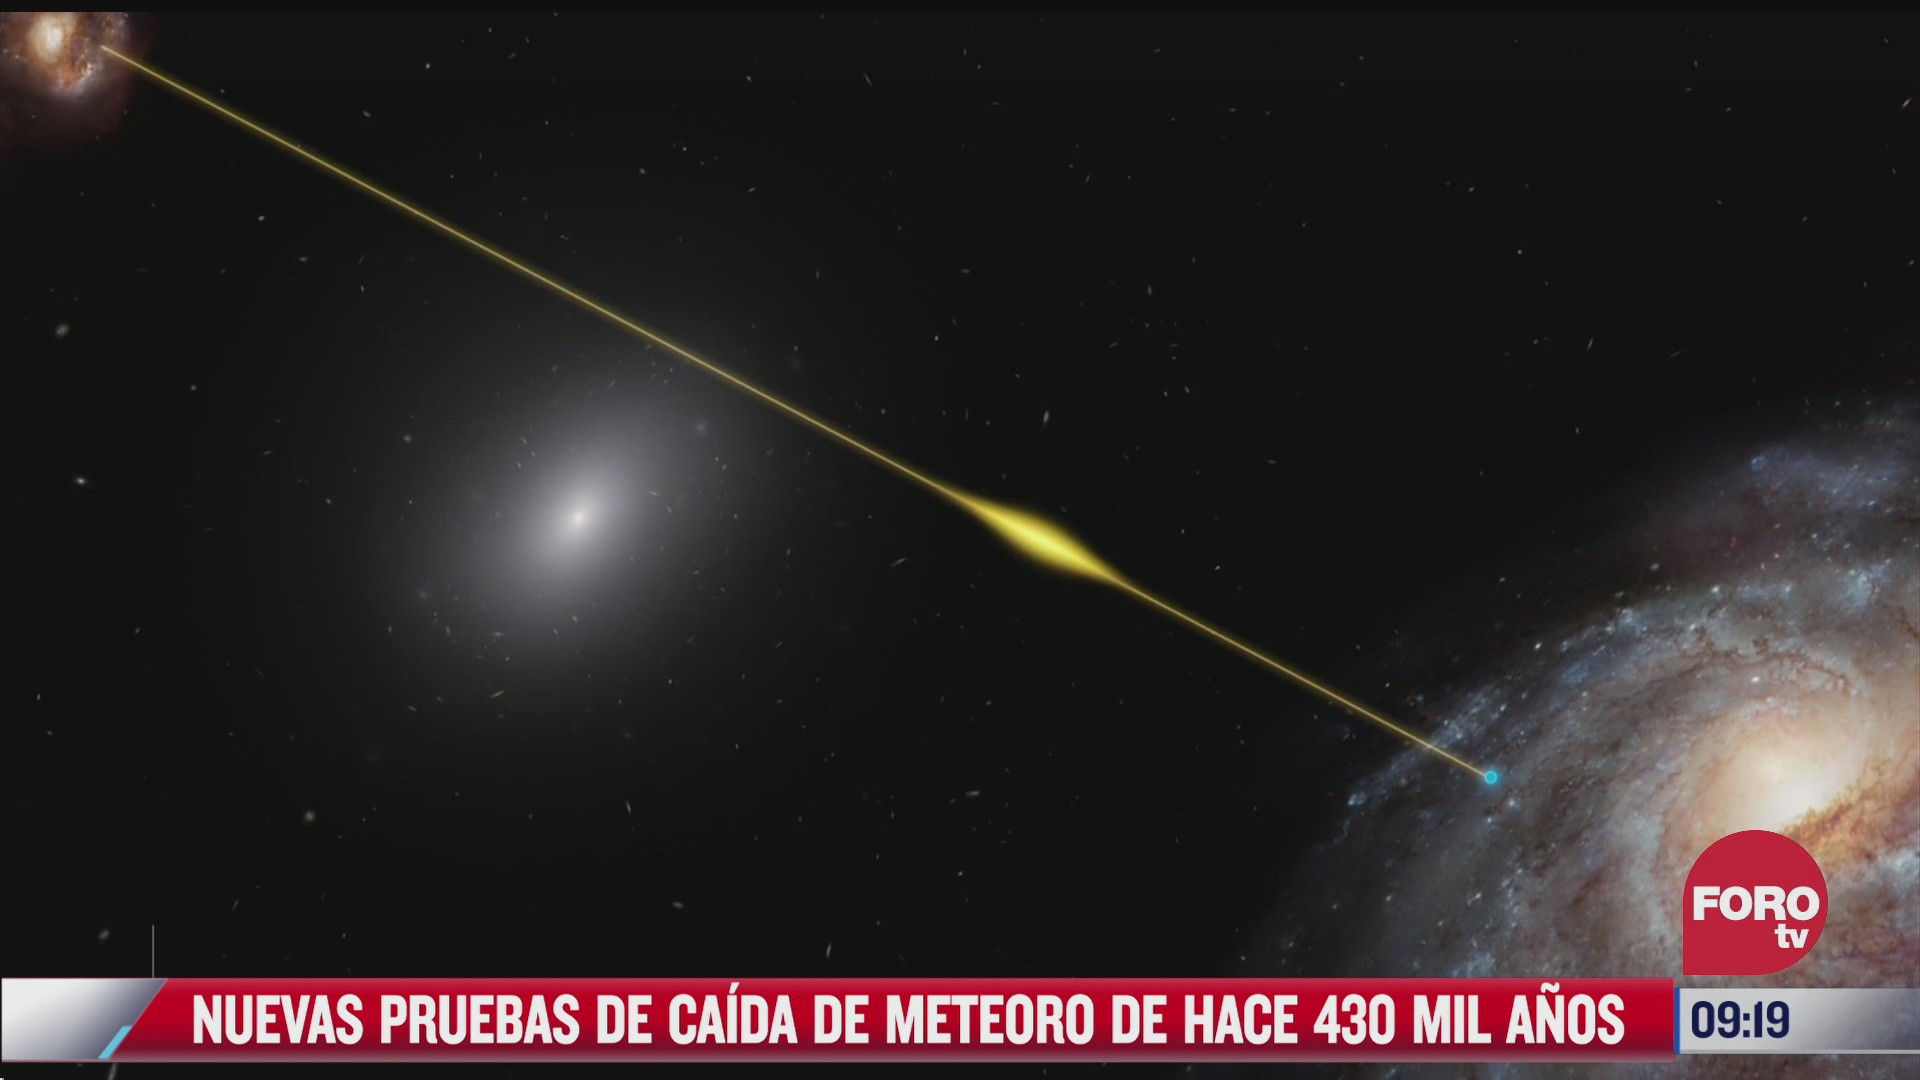 extra extra nuevas pruebas de caida de meteoro de hace 430 mil anos